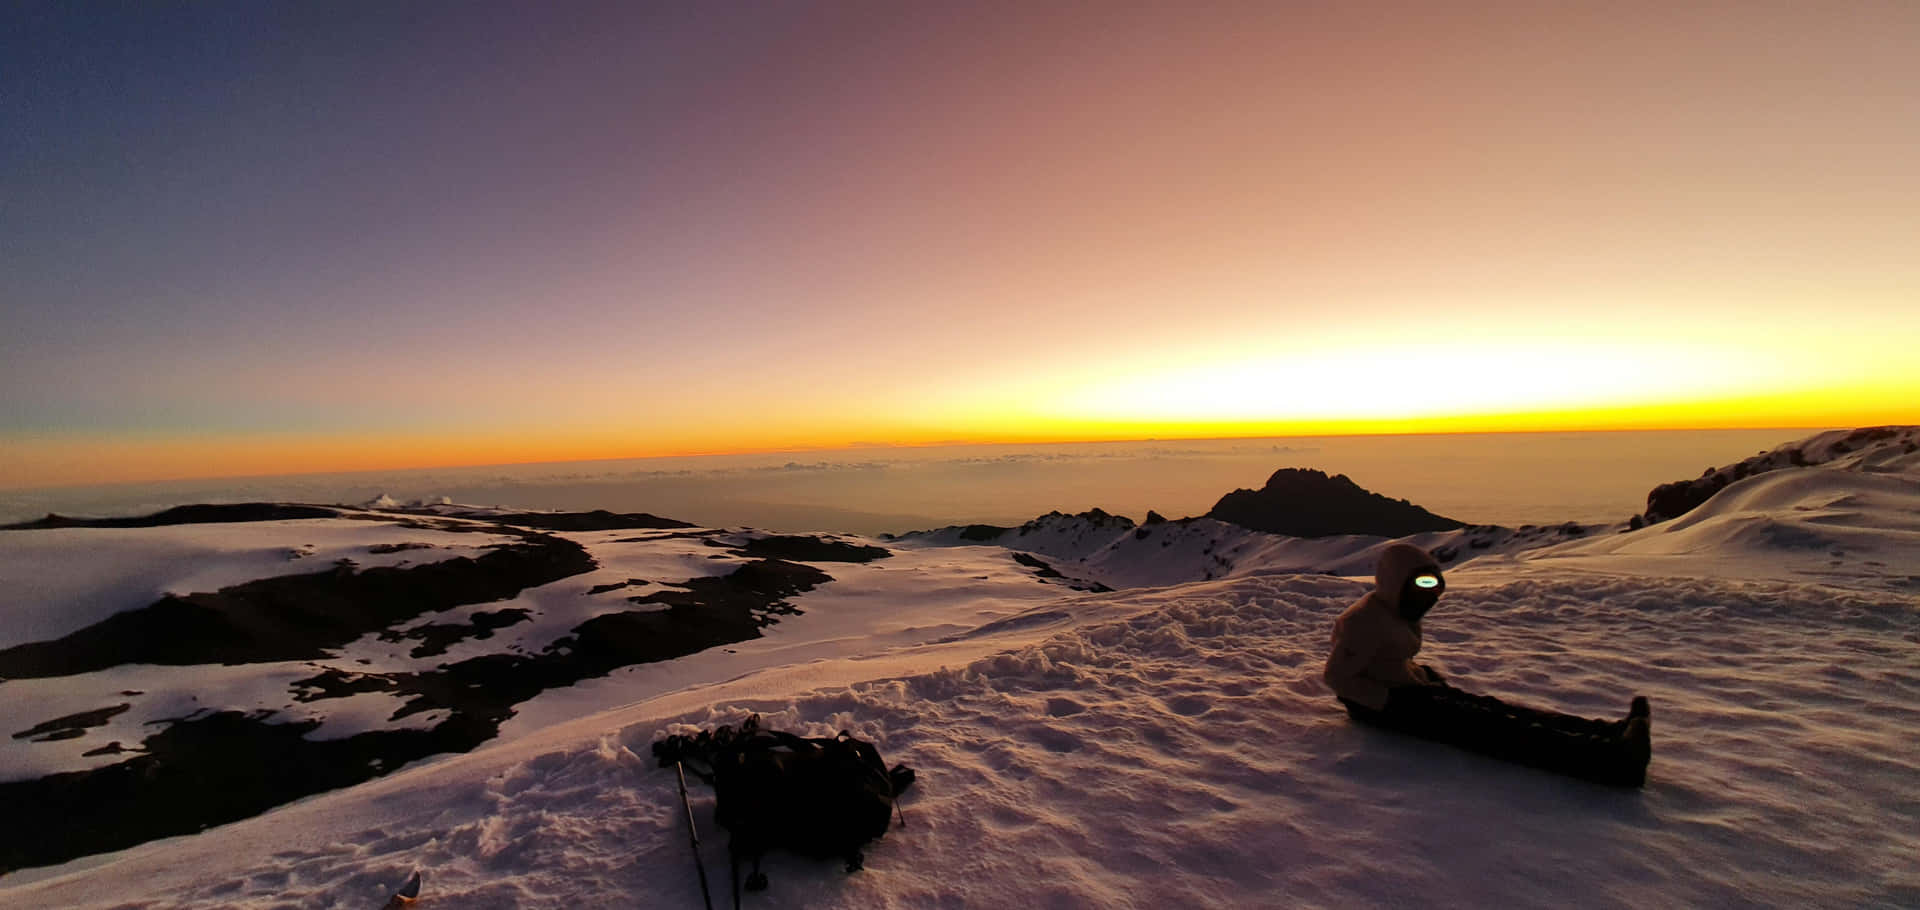 Sunrise At Mount Kilimanjaro Background